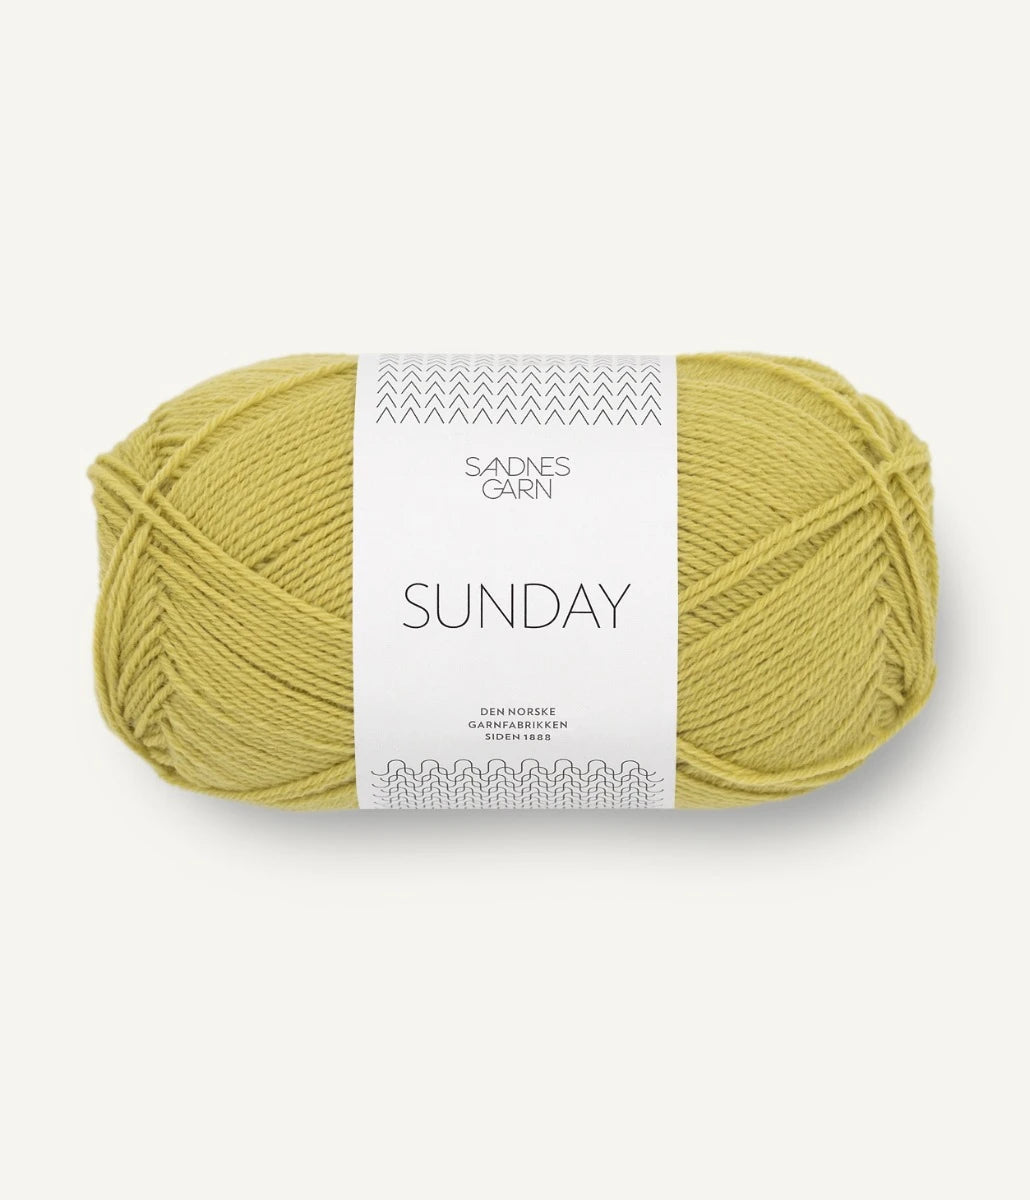 Kuvassa on Sandnes Garn Sunday lanka (yarn) värissä Sunny Lime.